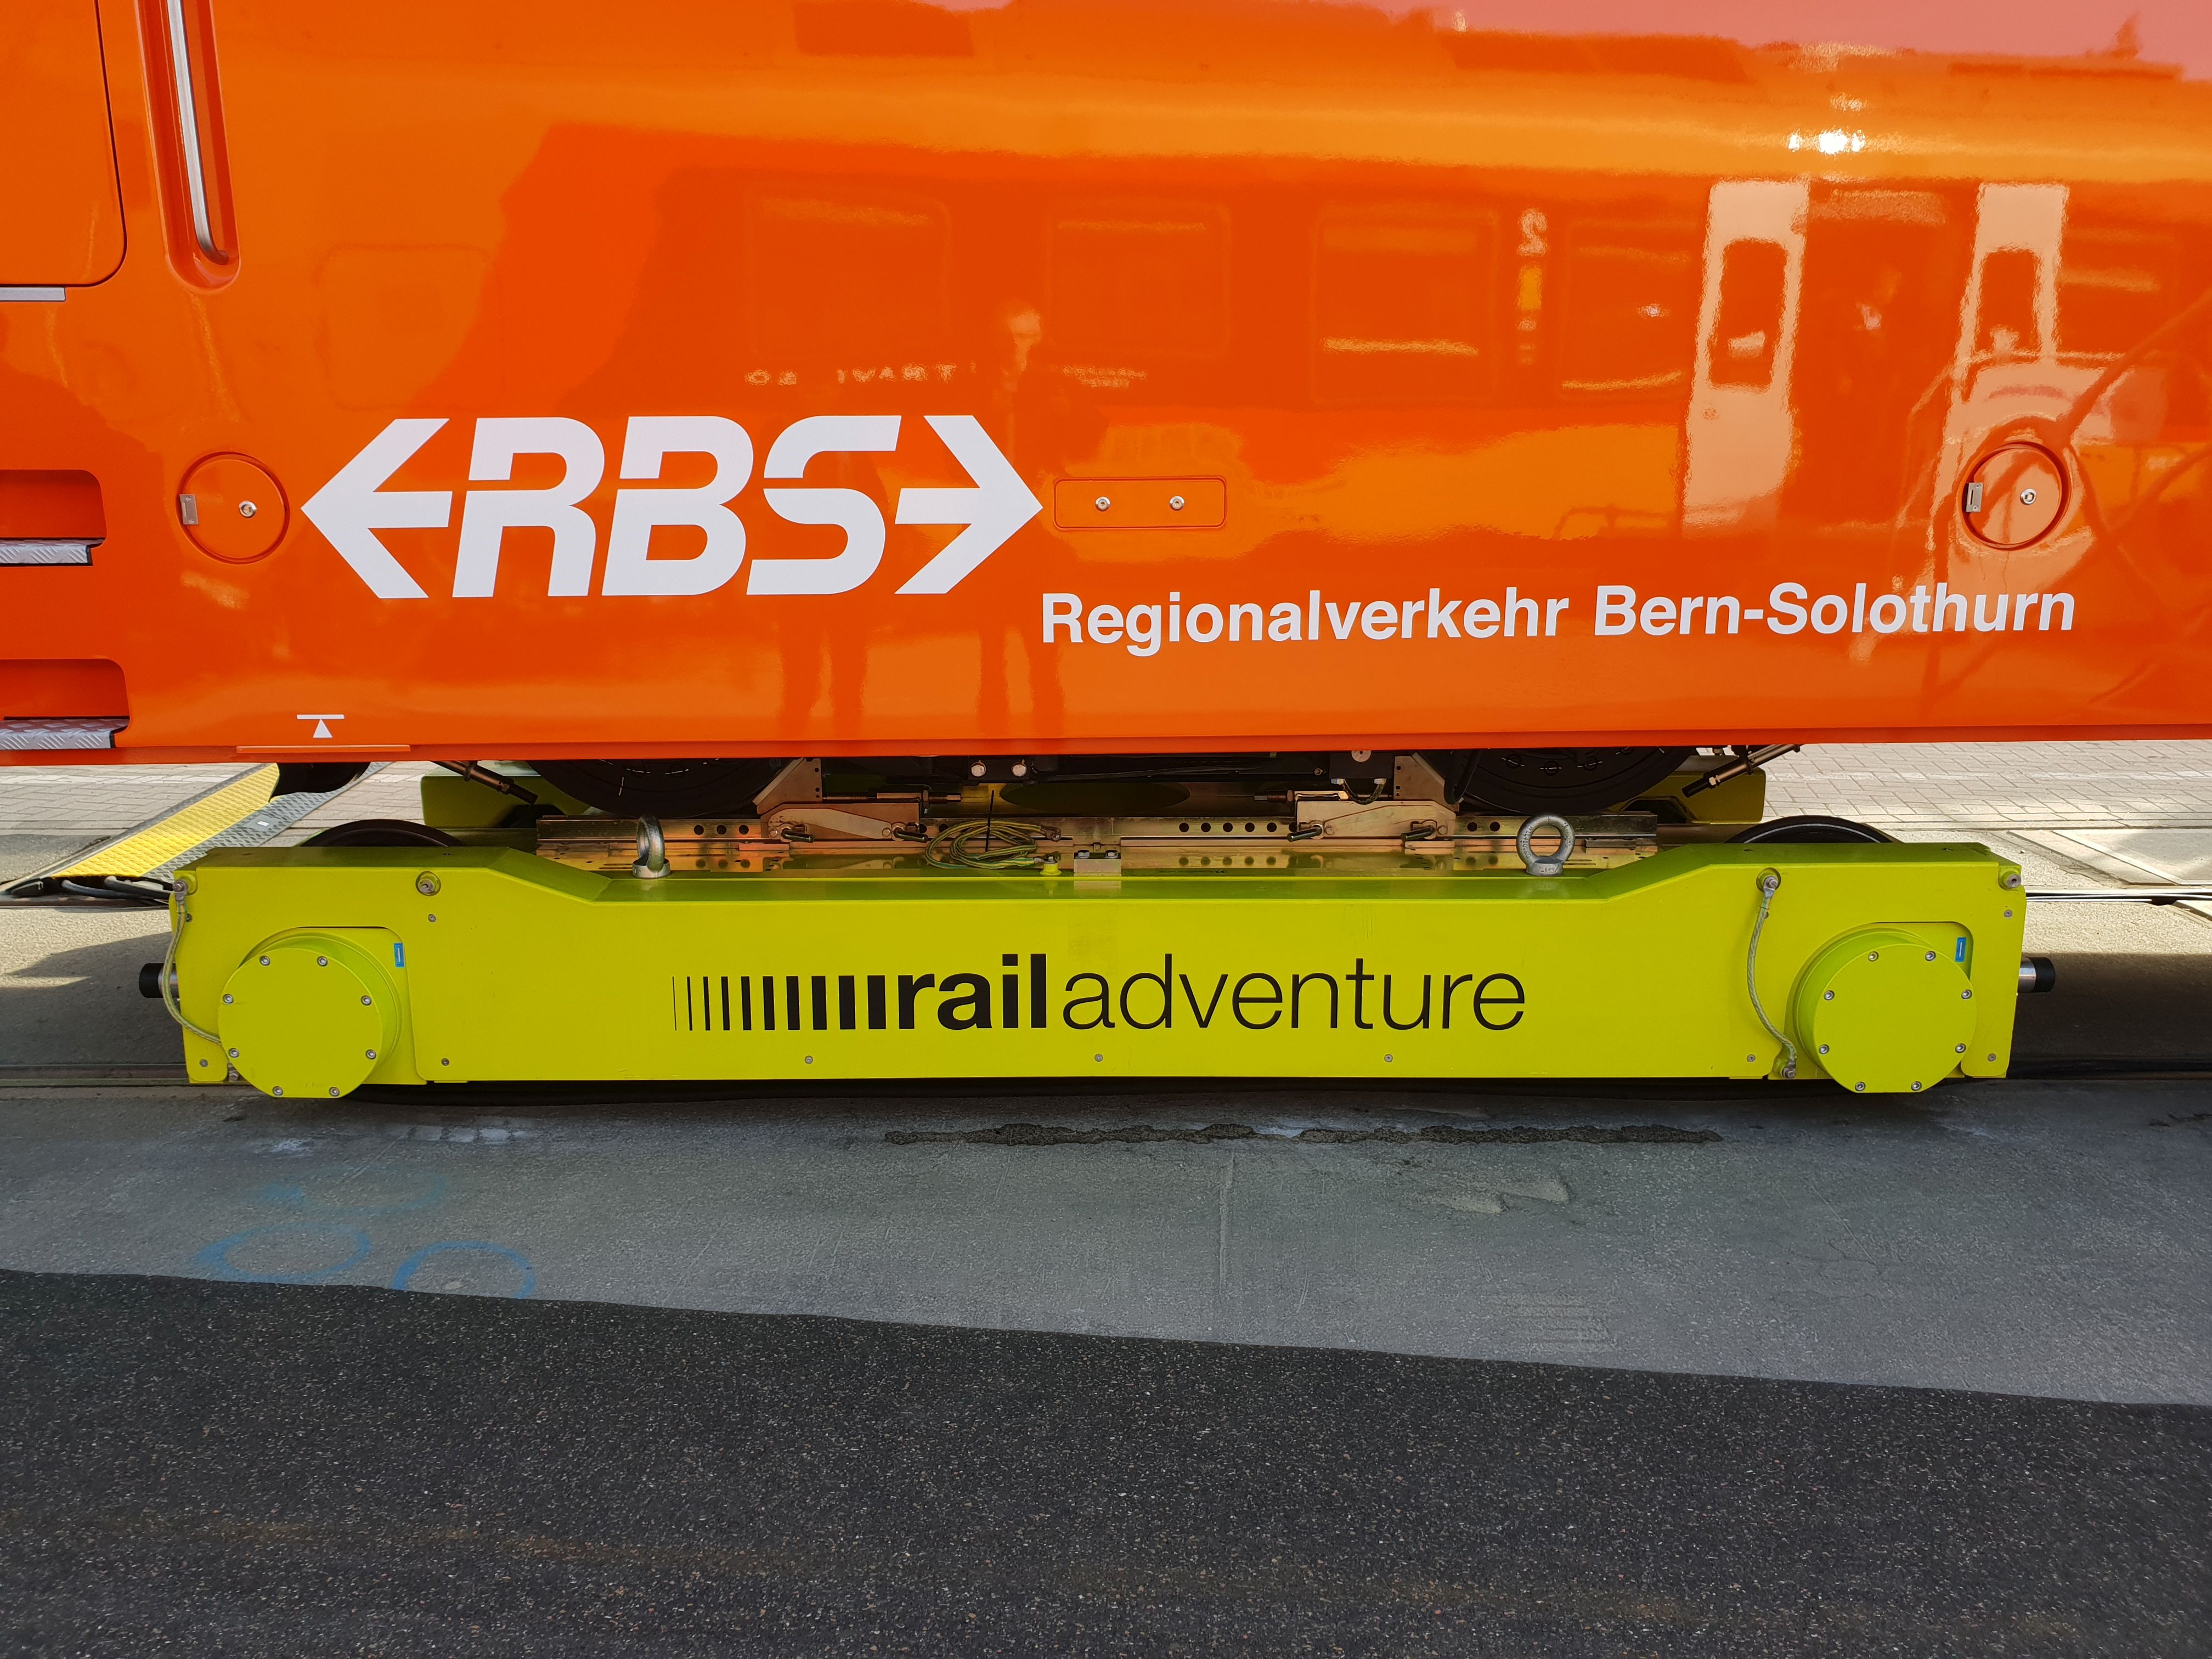 Foto: Loko-buggy von Railadventure zum Transport von Fahrzeugen anderer Spurweiten auf der Berliner Innotrans